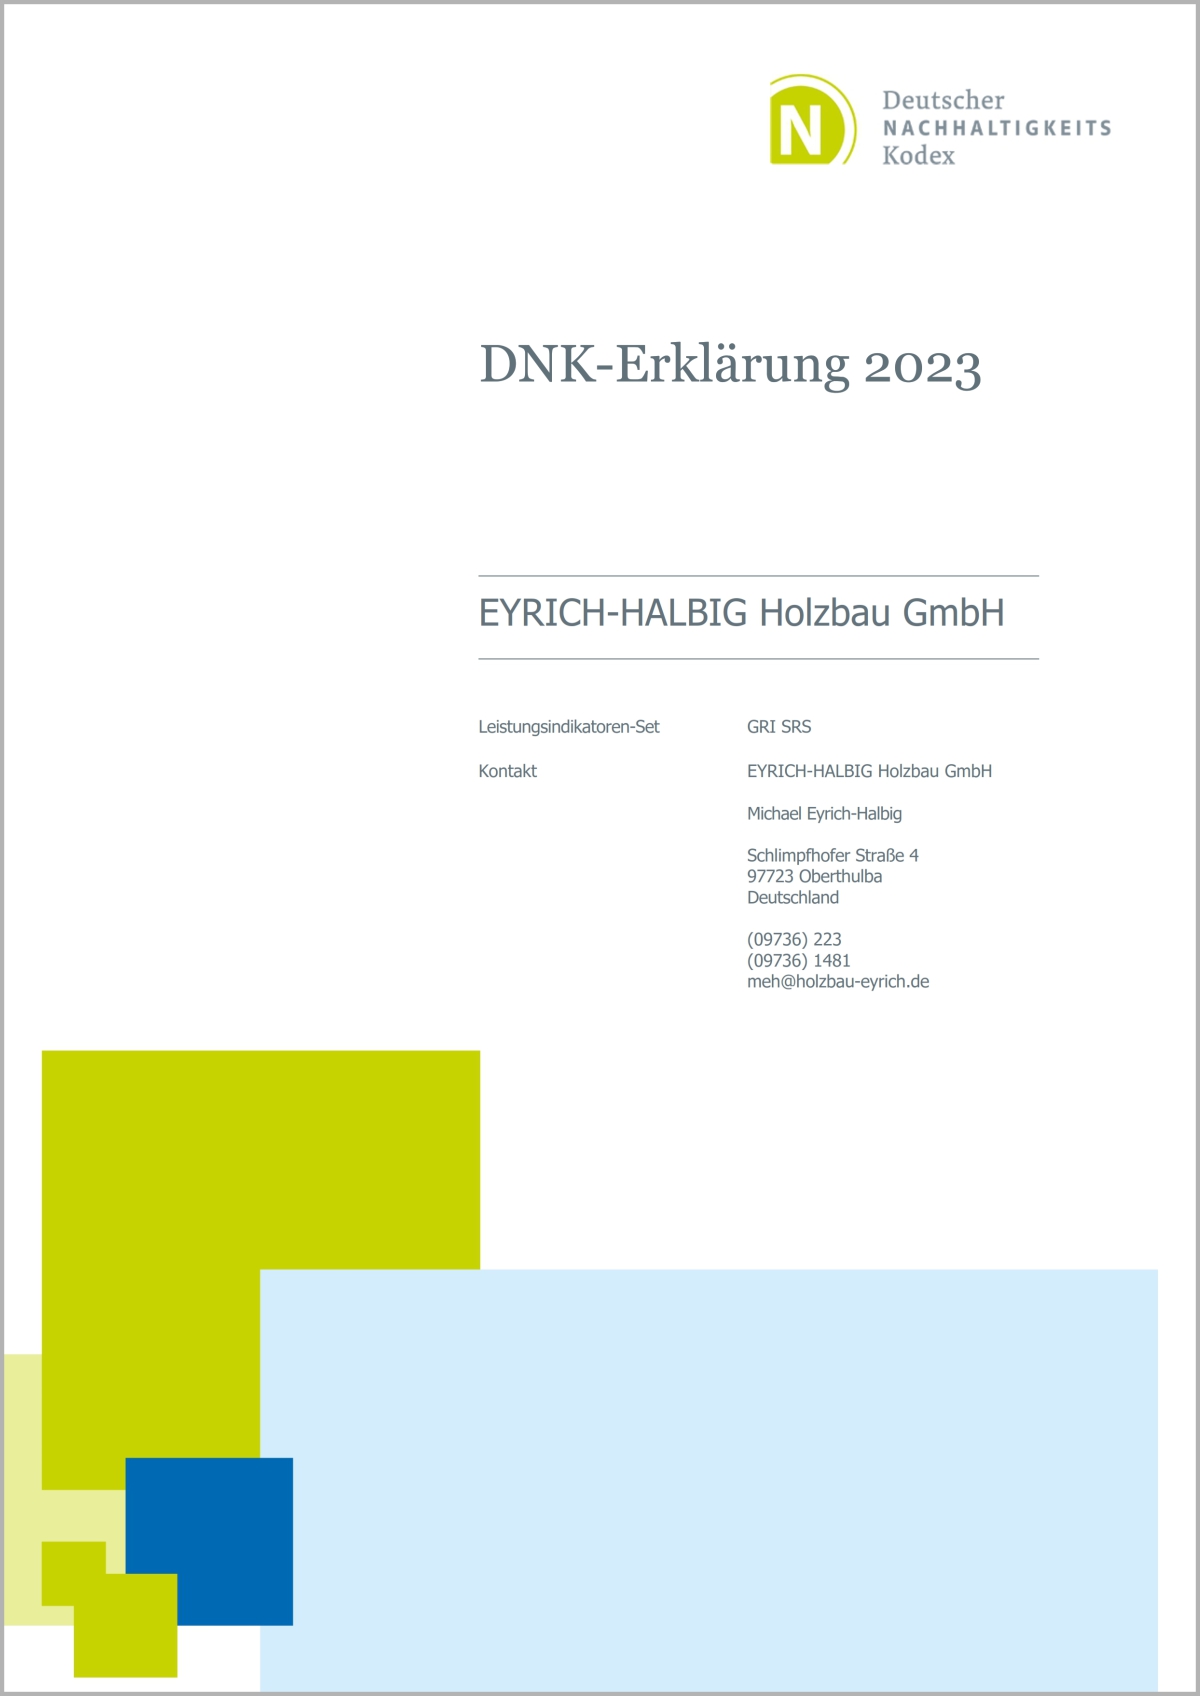 Quelle: https://www.holzbaueyrich.de/Downloads/DNK-2023-EYRICH-HALBIG-Holzbau-GmbH.pdf